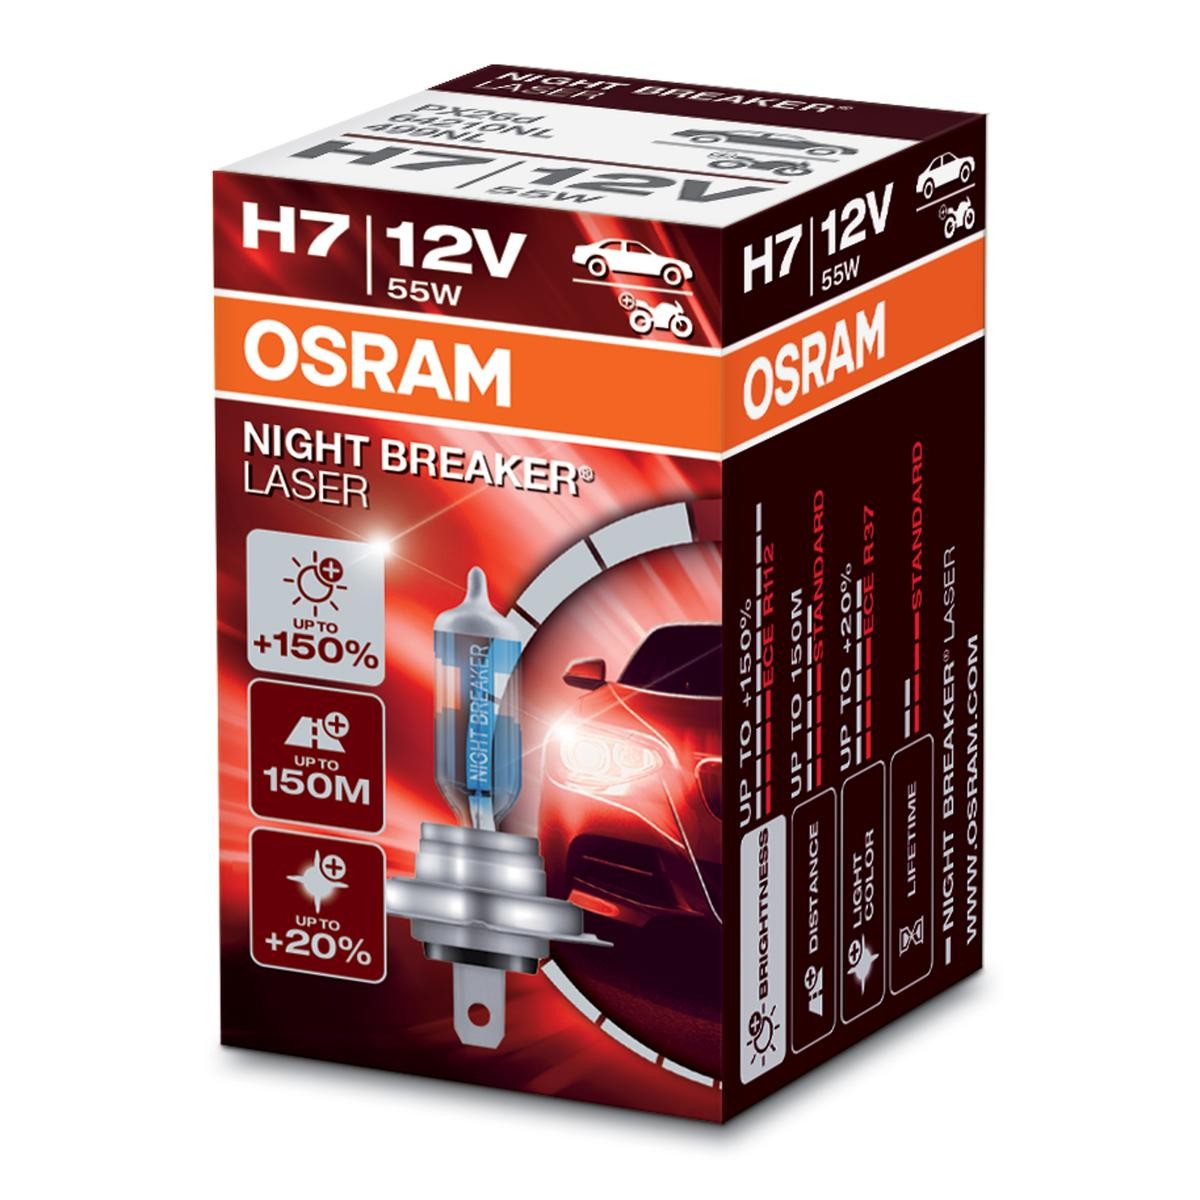 64210NL OSRAM NIGHT BREAKER LASER next Generation H7 12V 55W 4050K Halogen  Bulb, spotlight